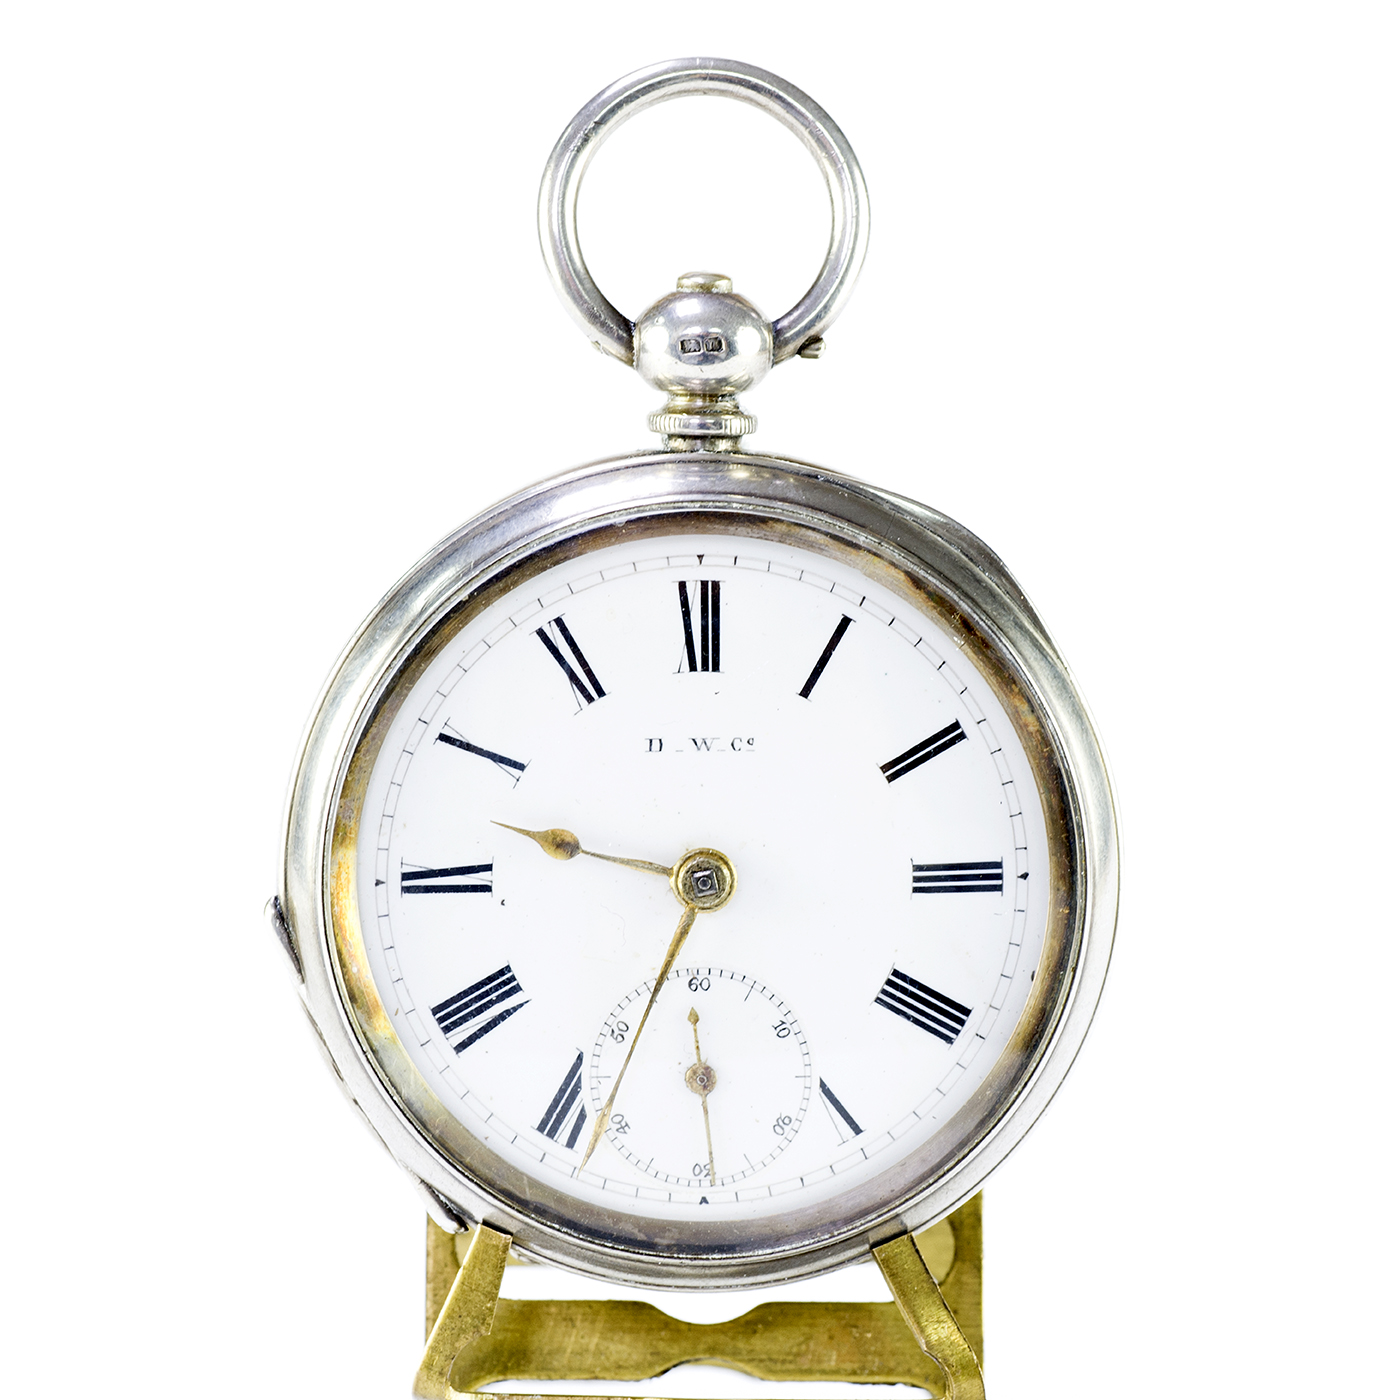 DOMINION WATCH Co. (D.W.Co.) Reloj de Bolsillo, lepine. Suiza, año 1.887.